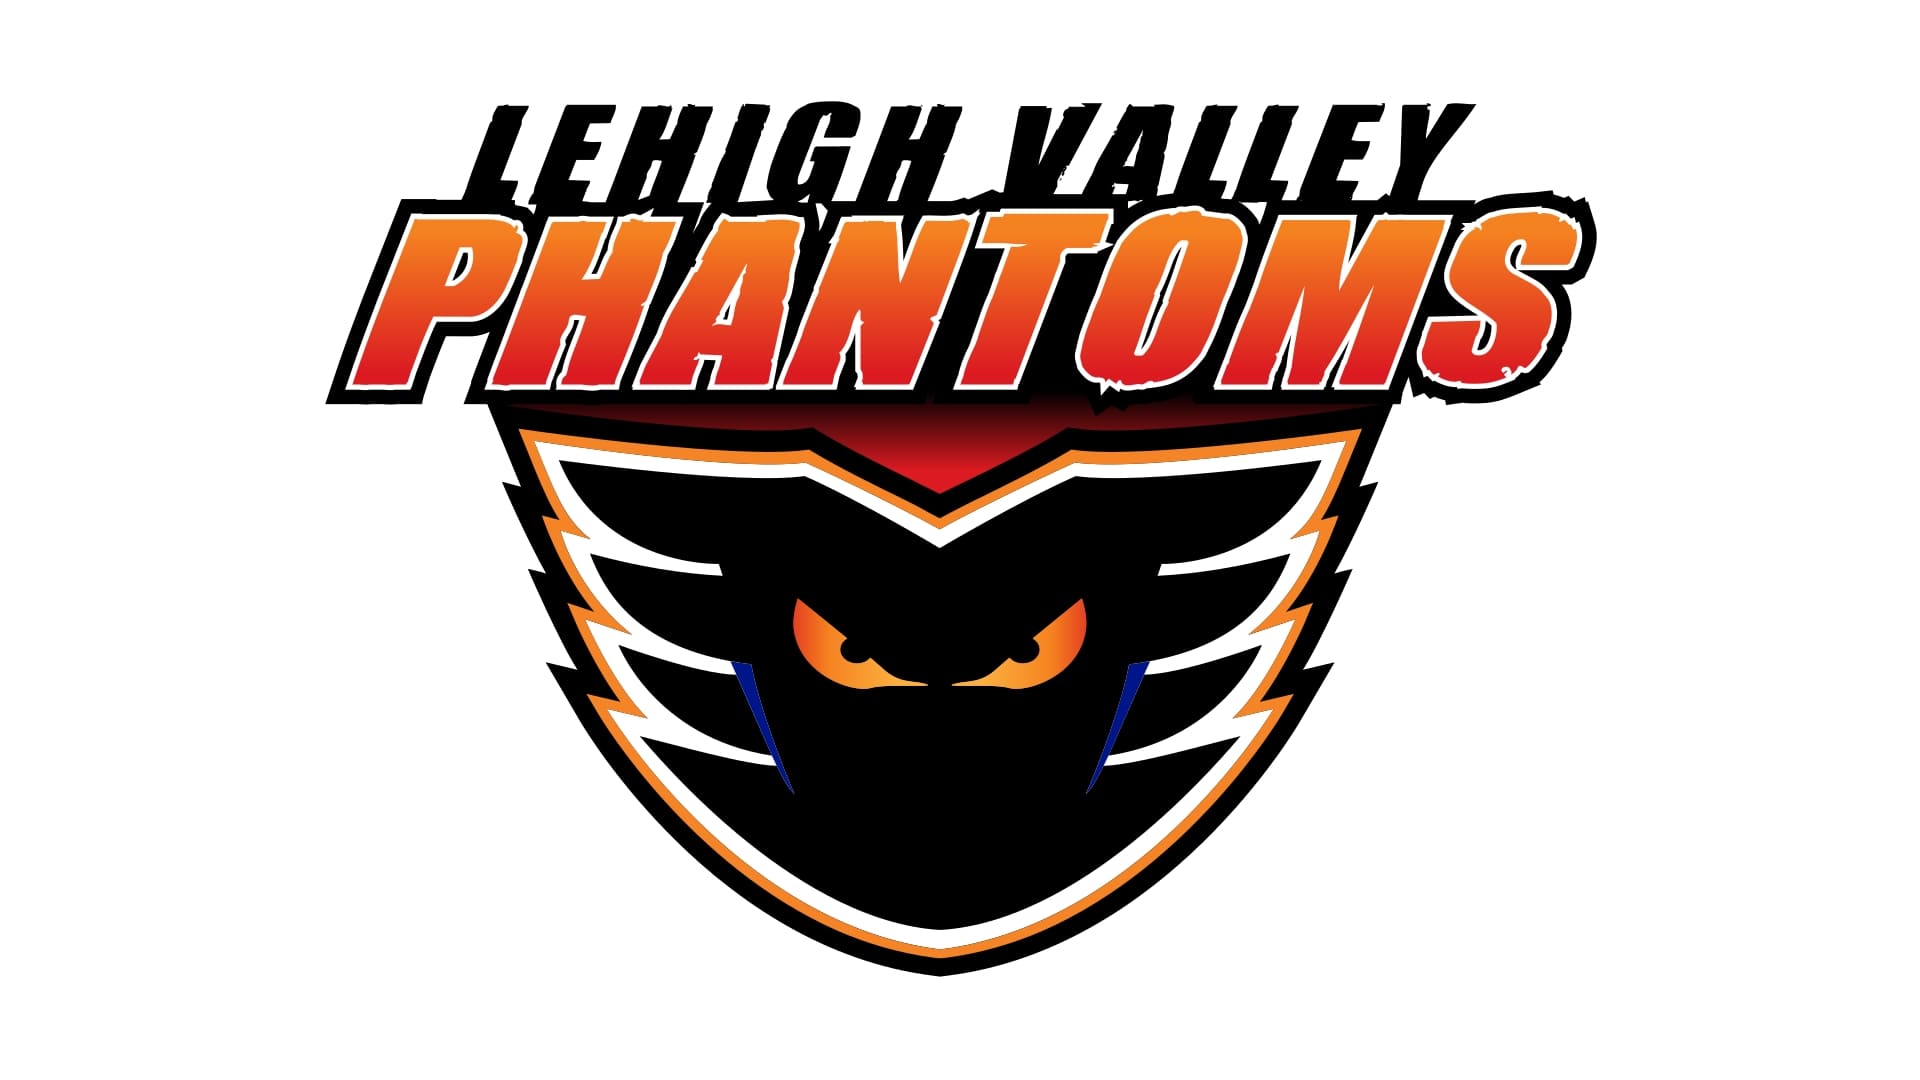 Home - Lehigh Valley Phantoms